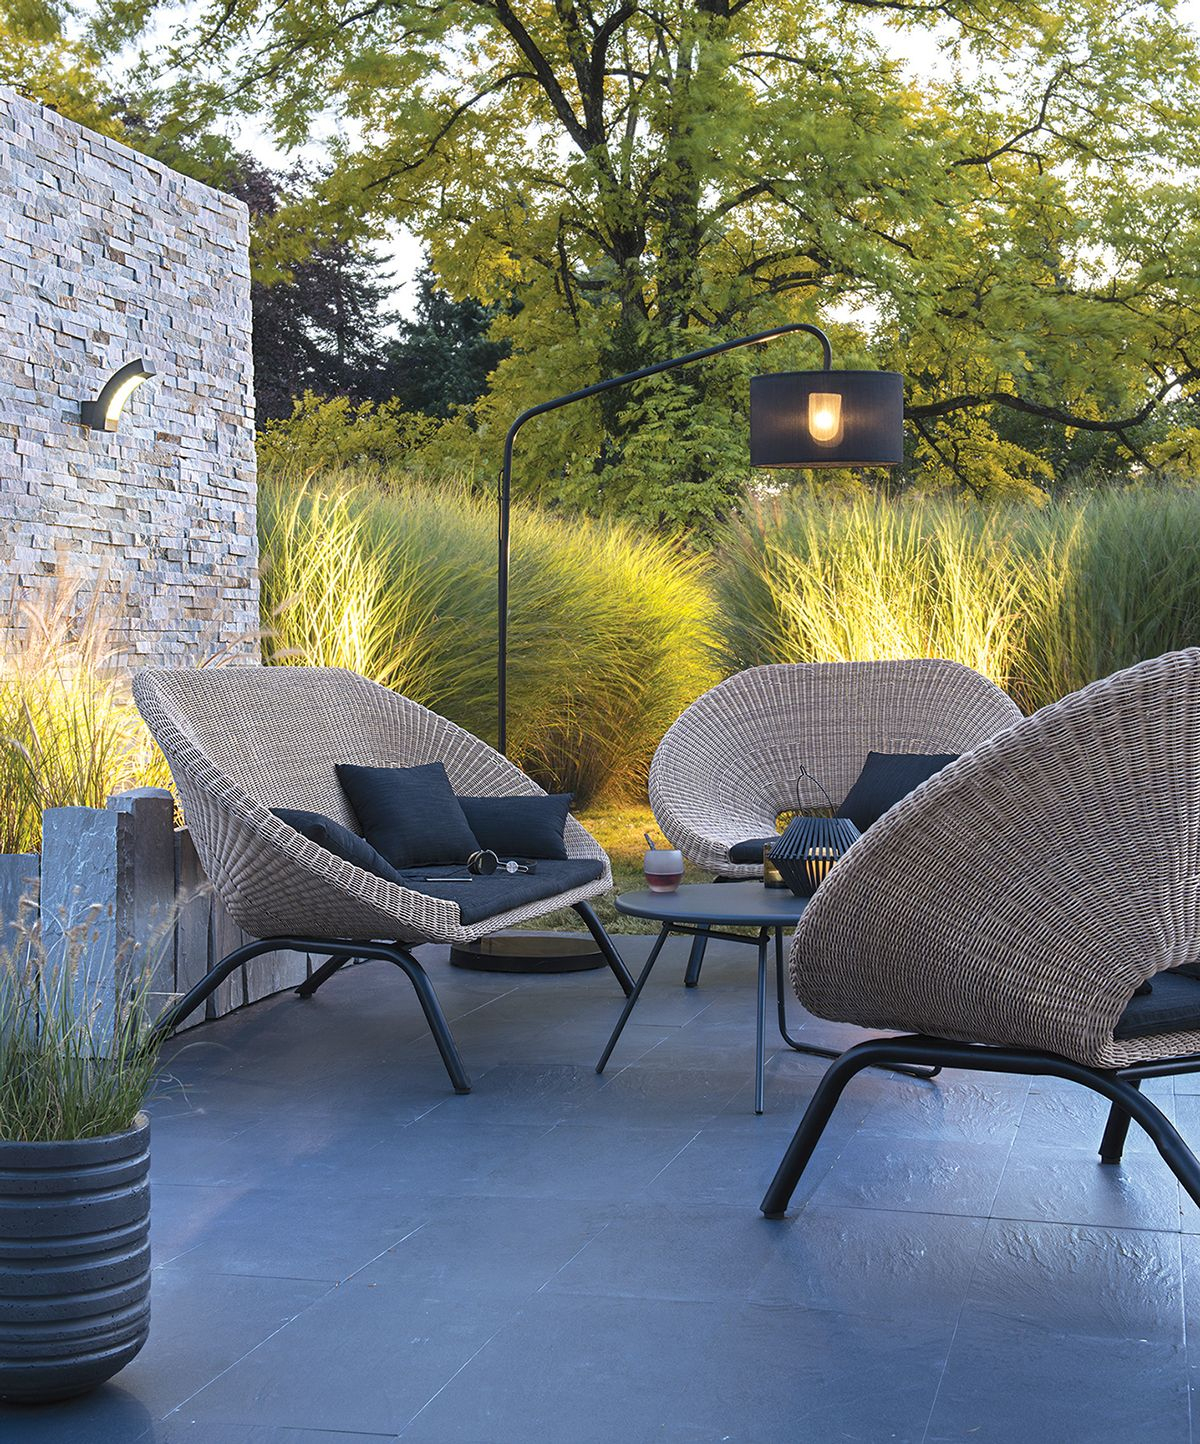 Loa Outdoor Furniture For Blooma On Behance | Meuble Jardin ... intérieur Salon De Jardin Blooma